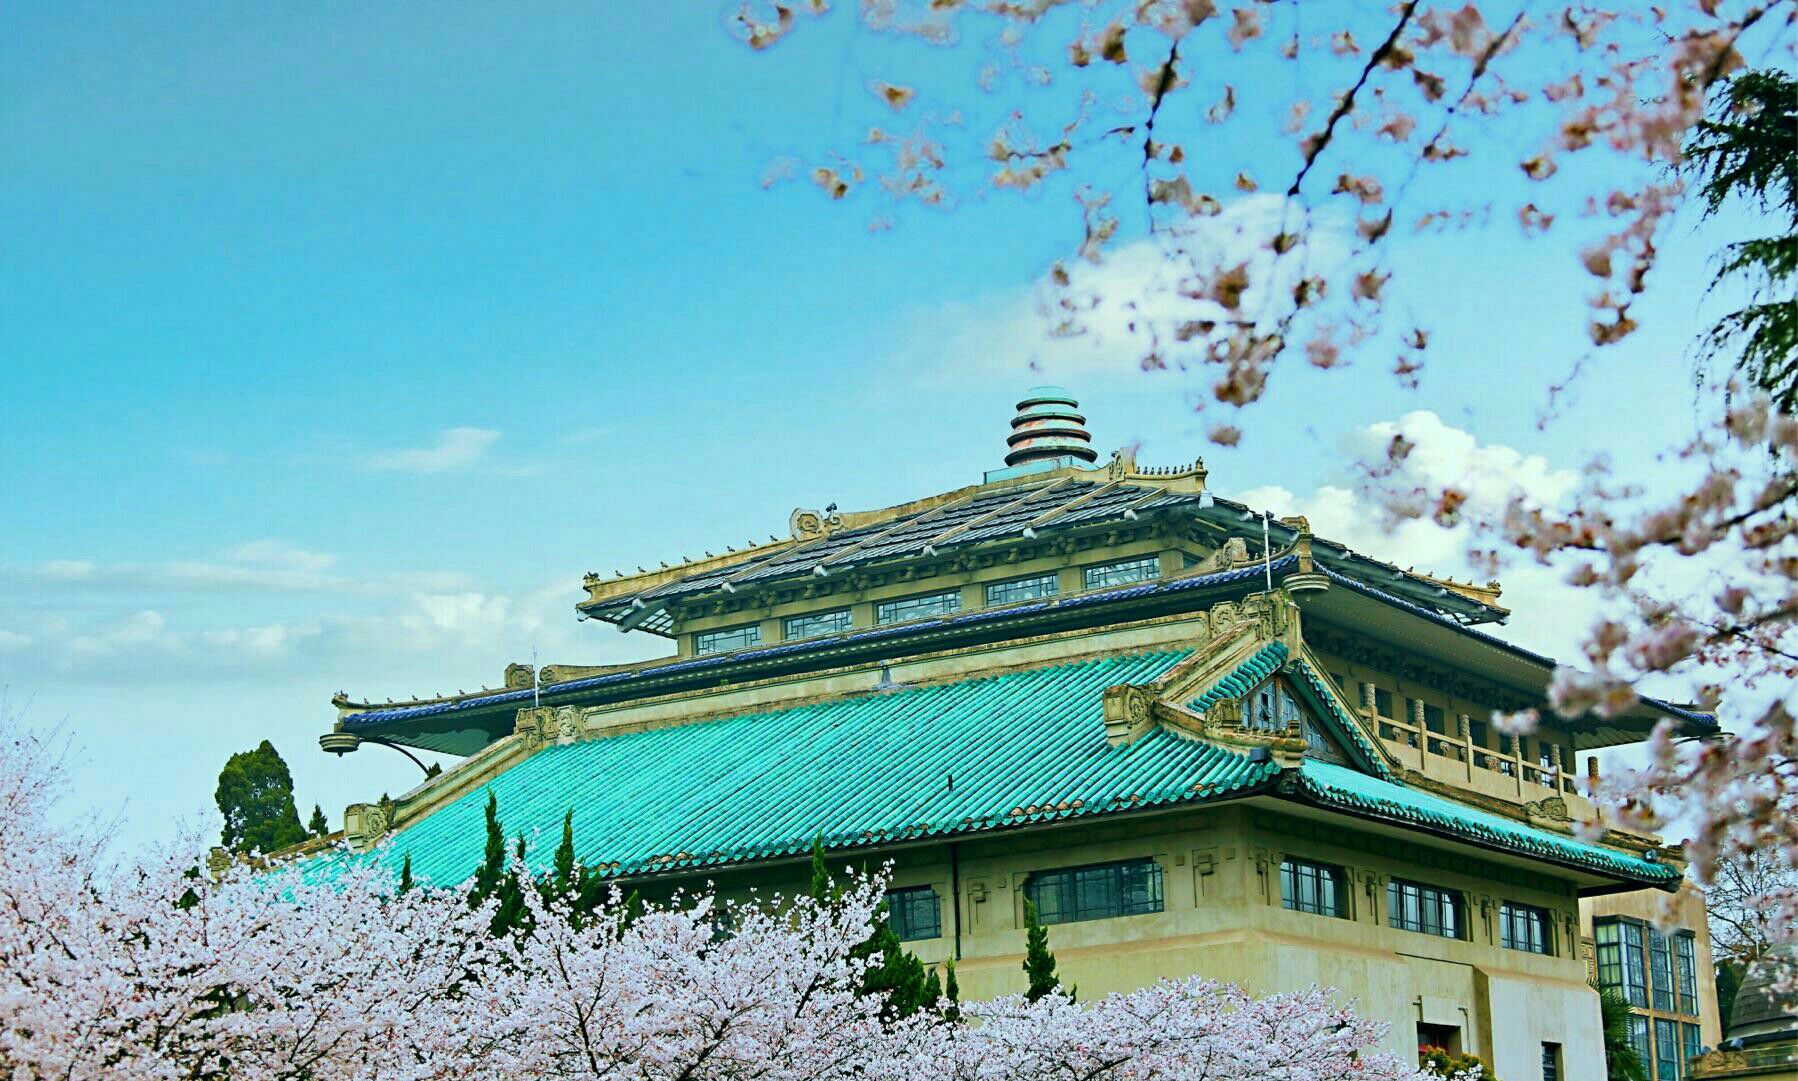 近年来,武大的樱花名声远扬,校园内主要赏樱地点有:樱花城堡,樱花大道